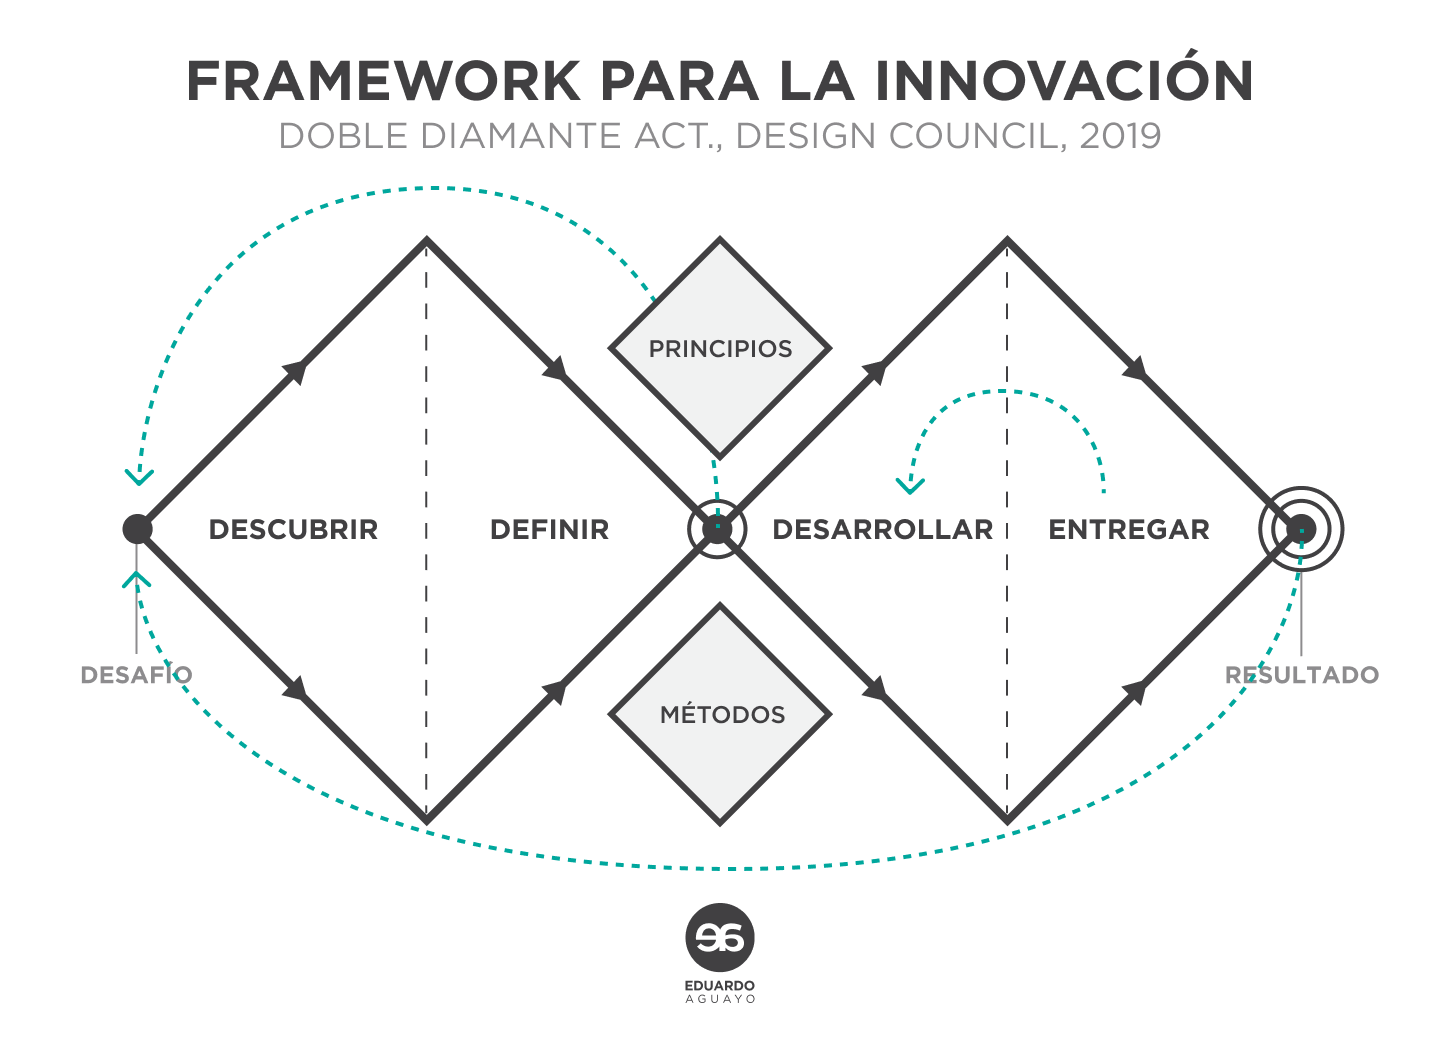 Esquema del framework para la innovación, considerando el doble diamante, principios de diseño, y un banco de métodos.